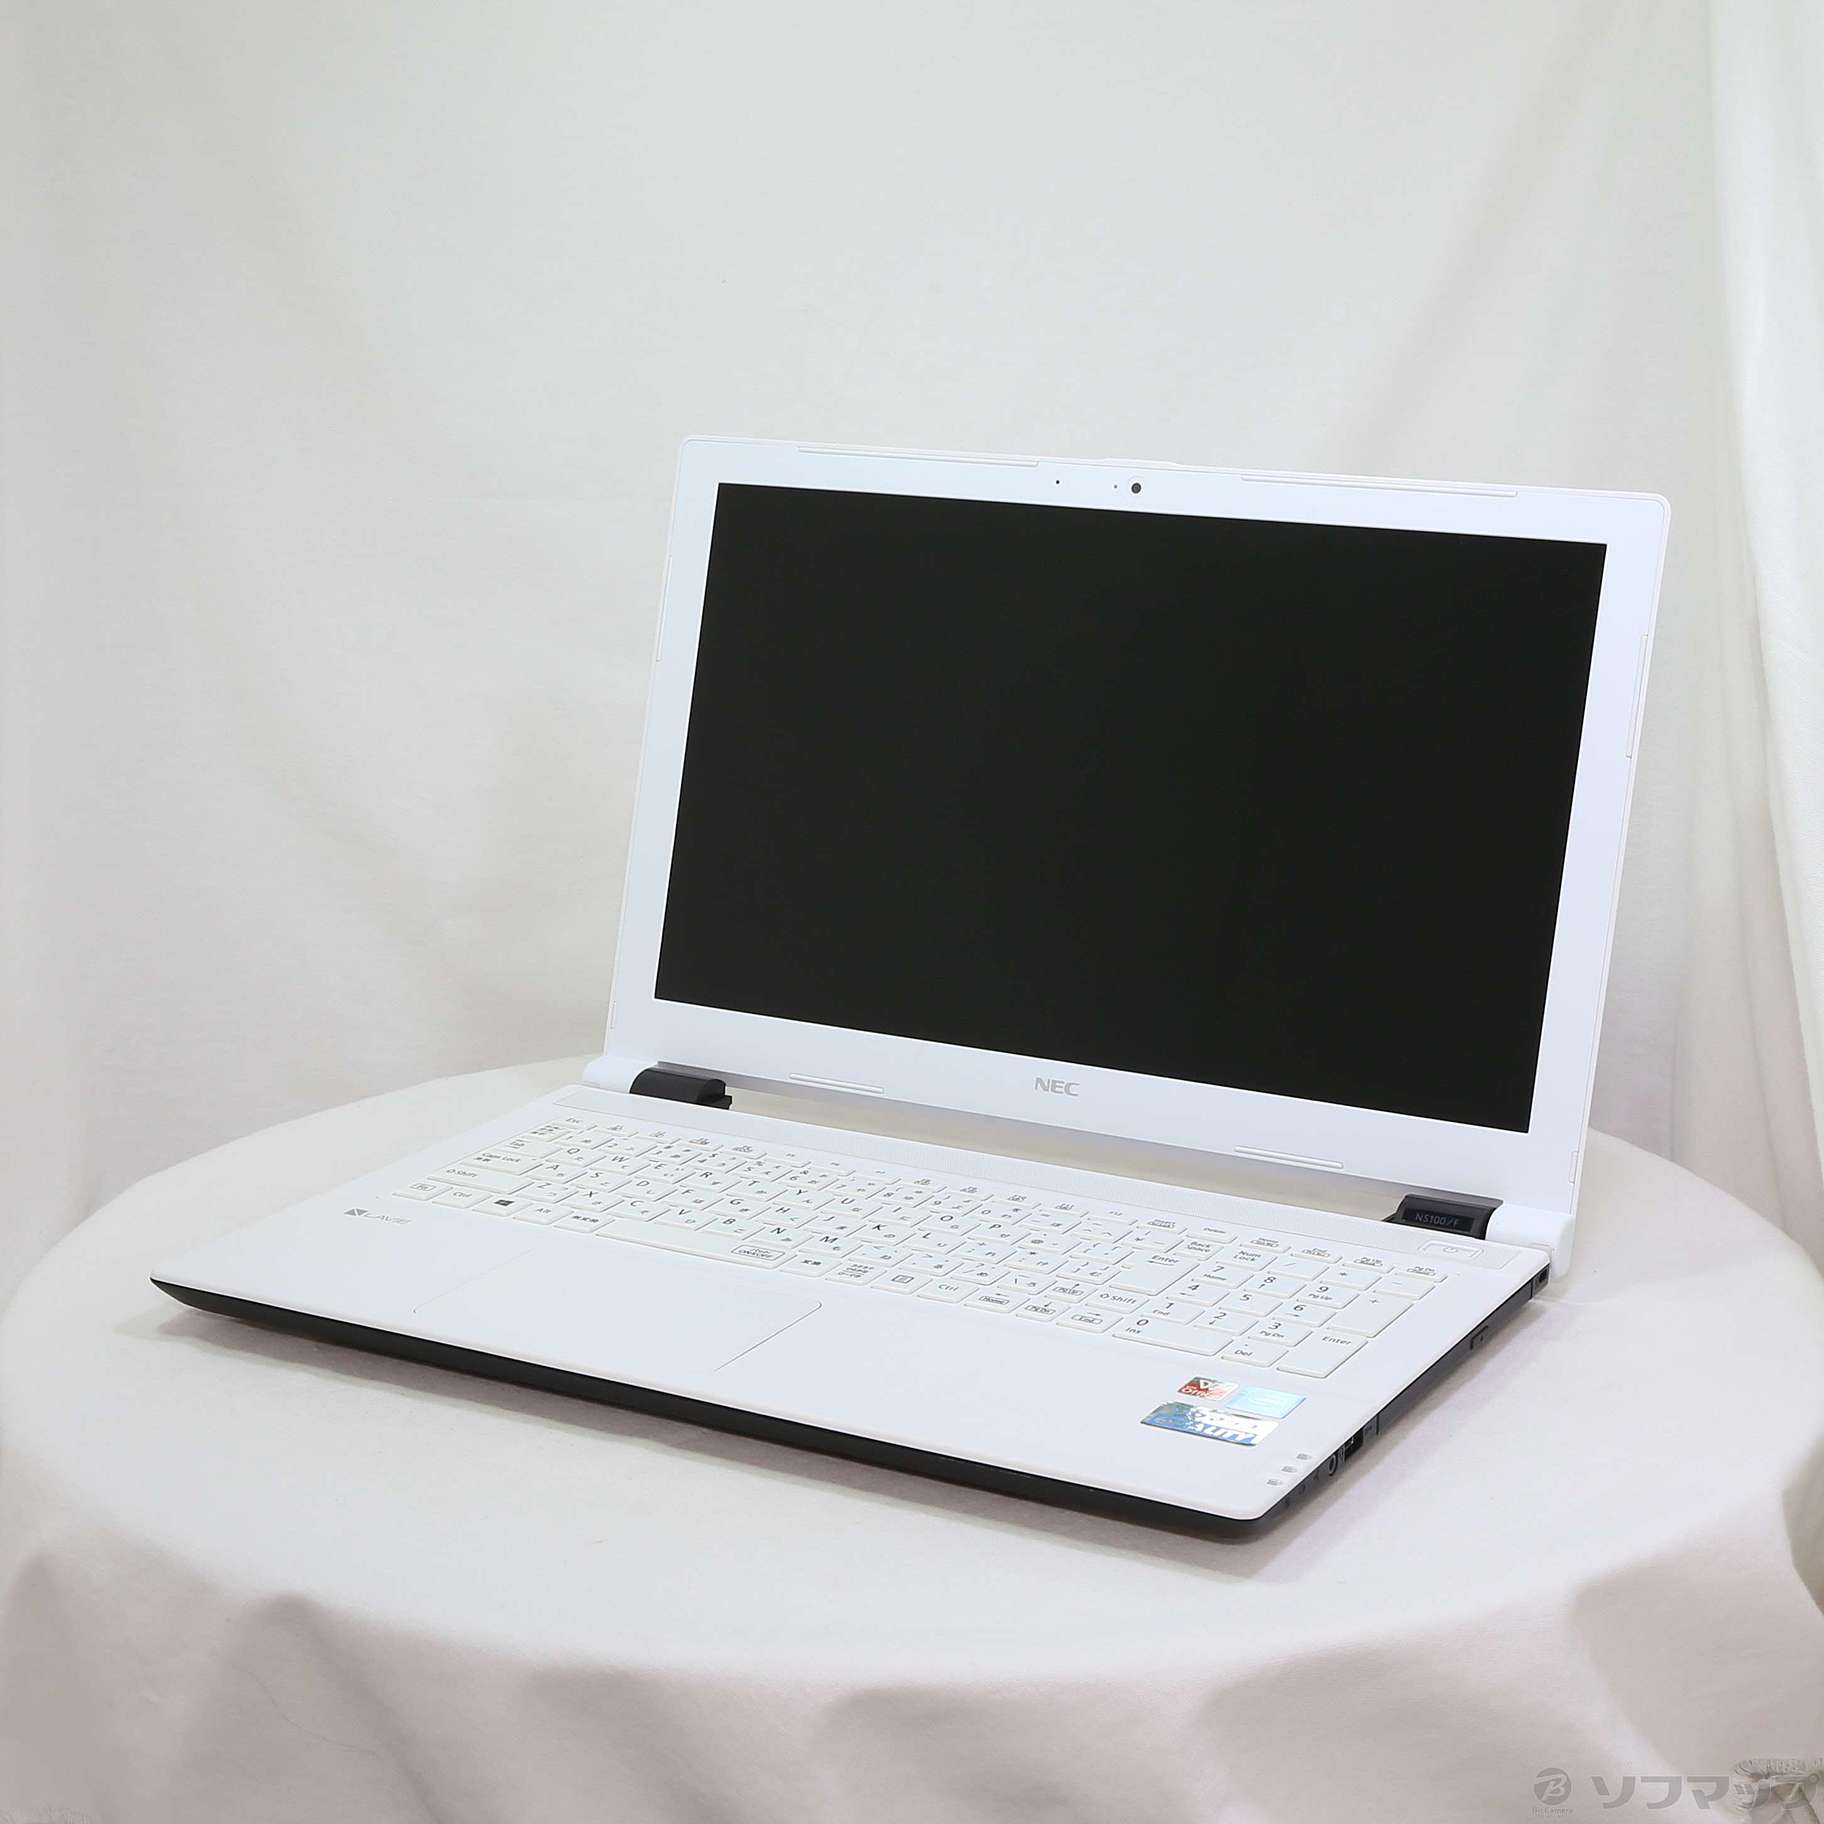 セール対象品 LAVIE Note Standard PC-NS100F2W-H4 ホワイト 〔Windows 10〕